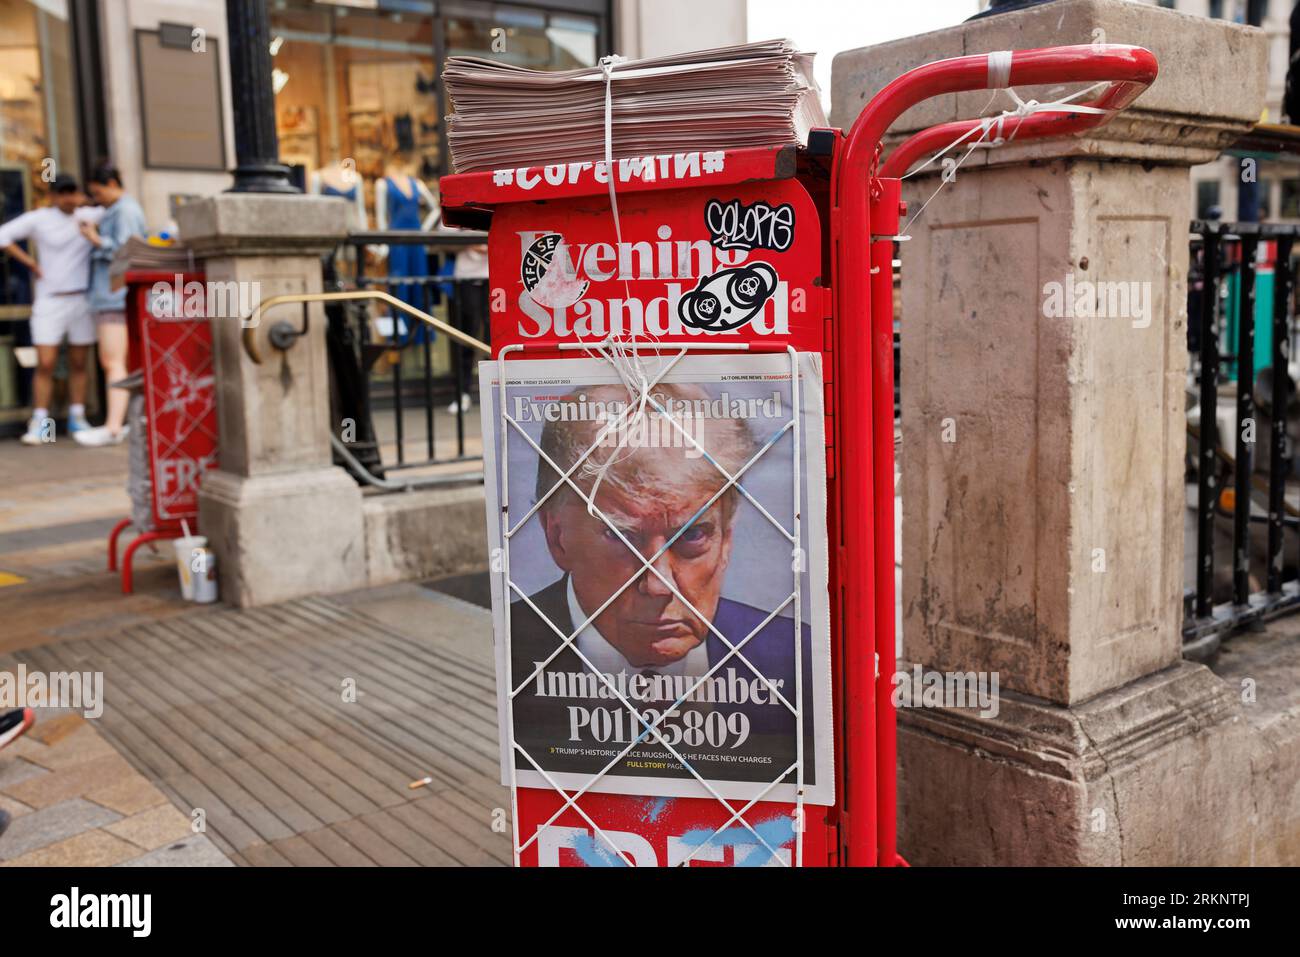 Polizeibecher auf den ehemaligen Präsidenten Donald John Trump auf der Vorderseite der Londoner Abendzeitung Standard, die auf einem Zeitungskiosk im Oxford Circus ausgestellt wurde Stockfoto